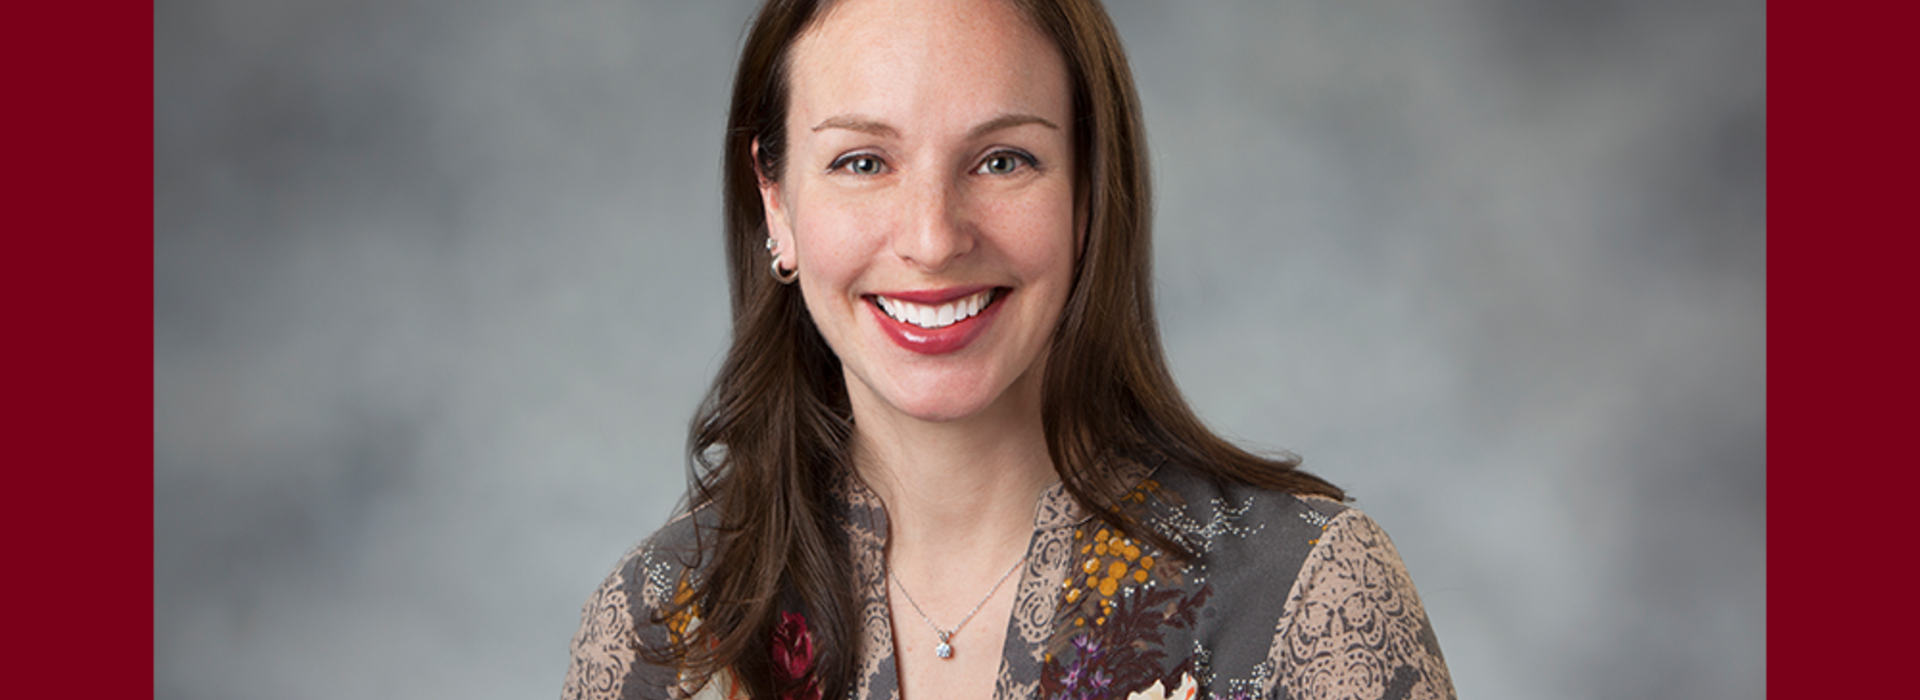 Dr. Lisa Roazen